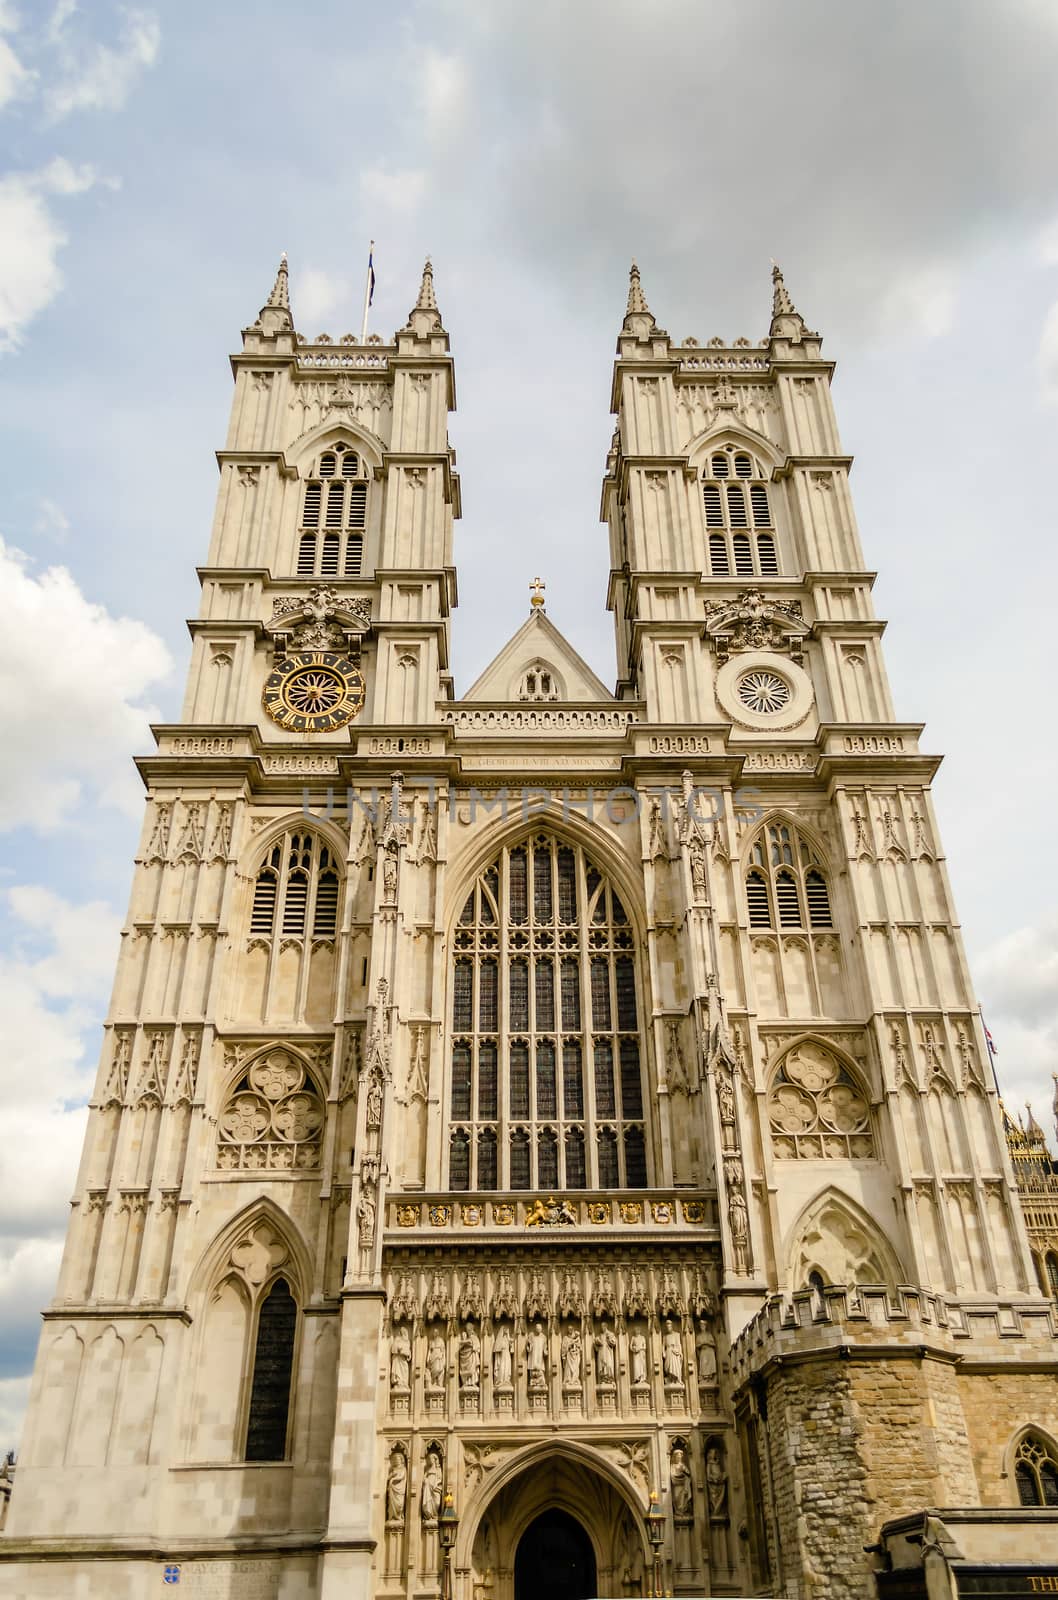 Westminster Abbey, London, UK by marcorubino